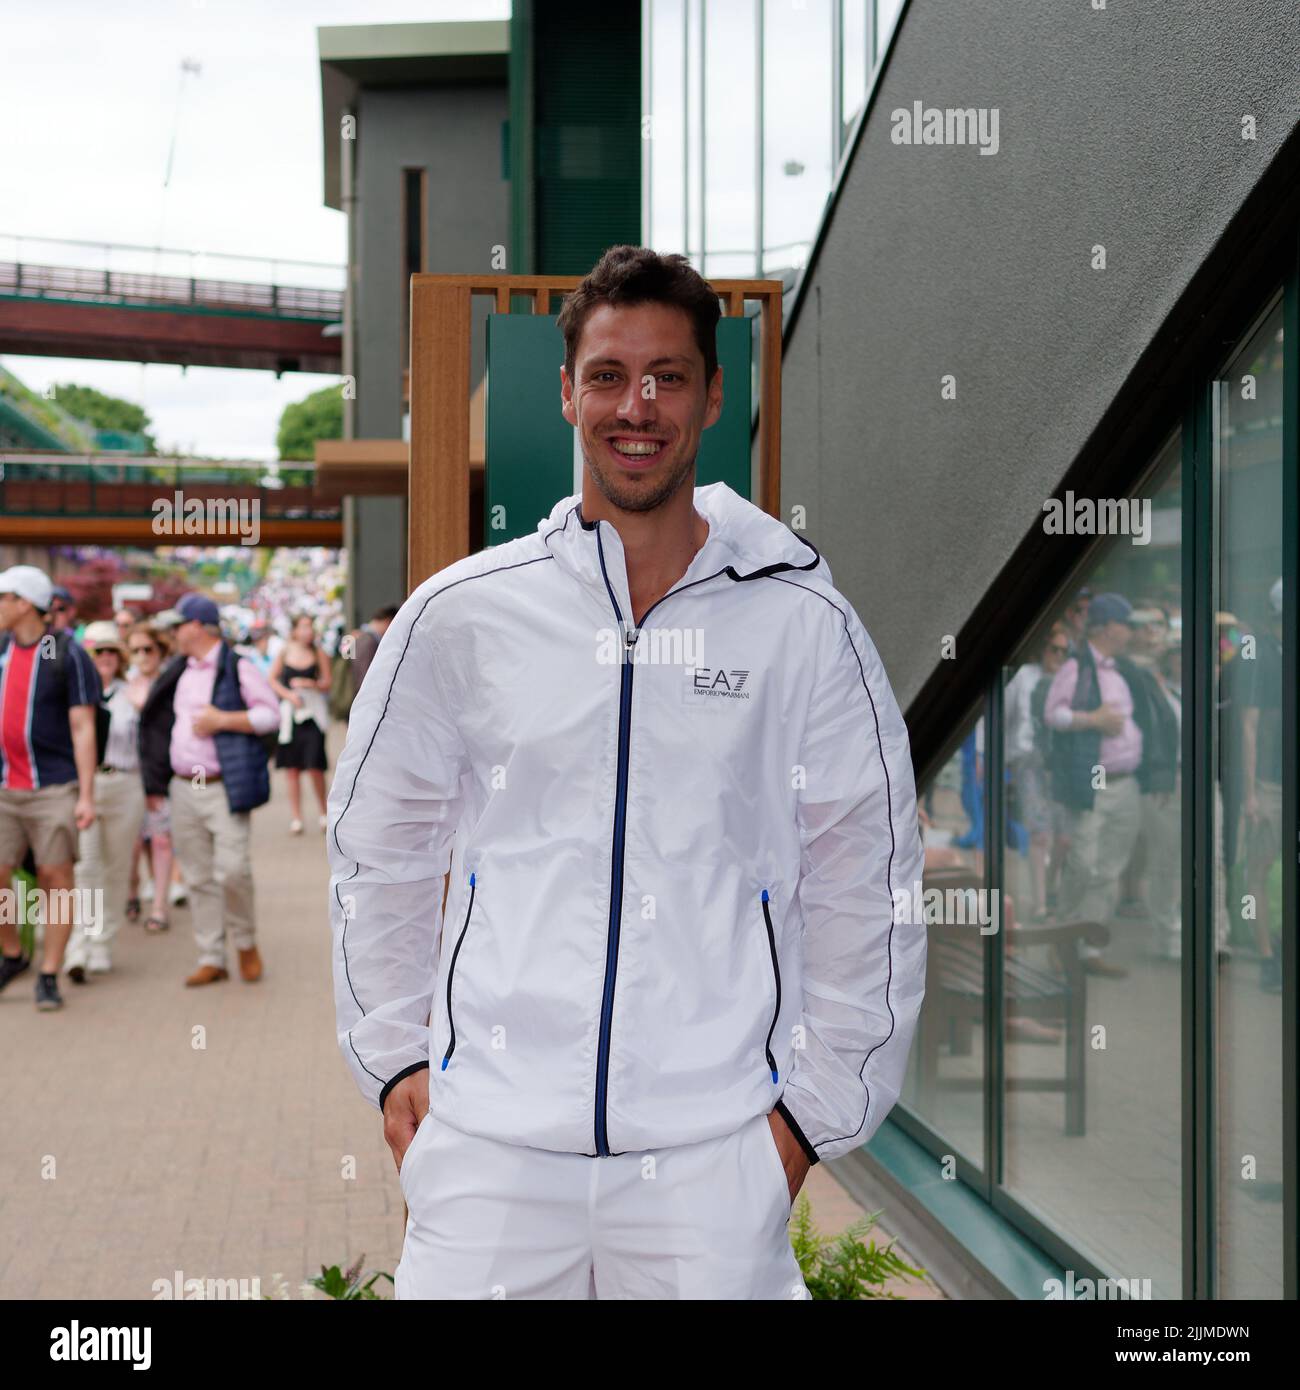 Wimbledon, Grand Londres, Angleterre, 02 juillet 2022: Championnat de tennis de Wimbledon. Un joueur de tennis sourit pour une photo avant de jouer un match. Banque D'Images